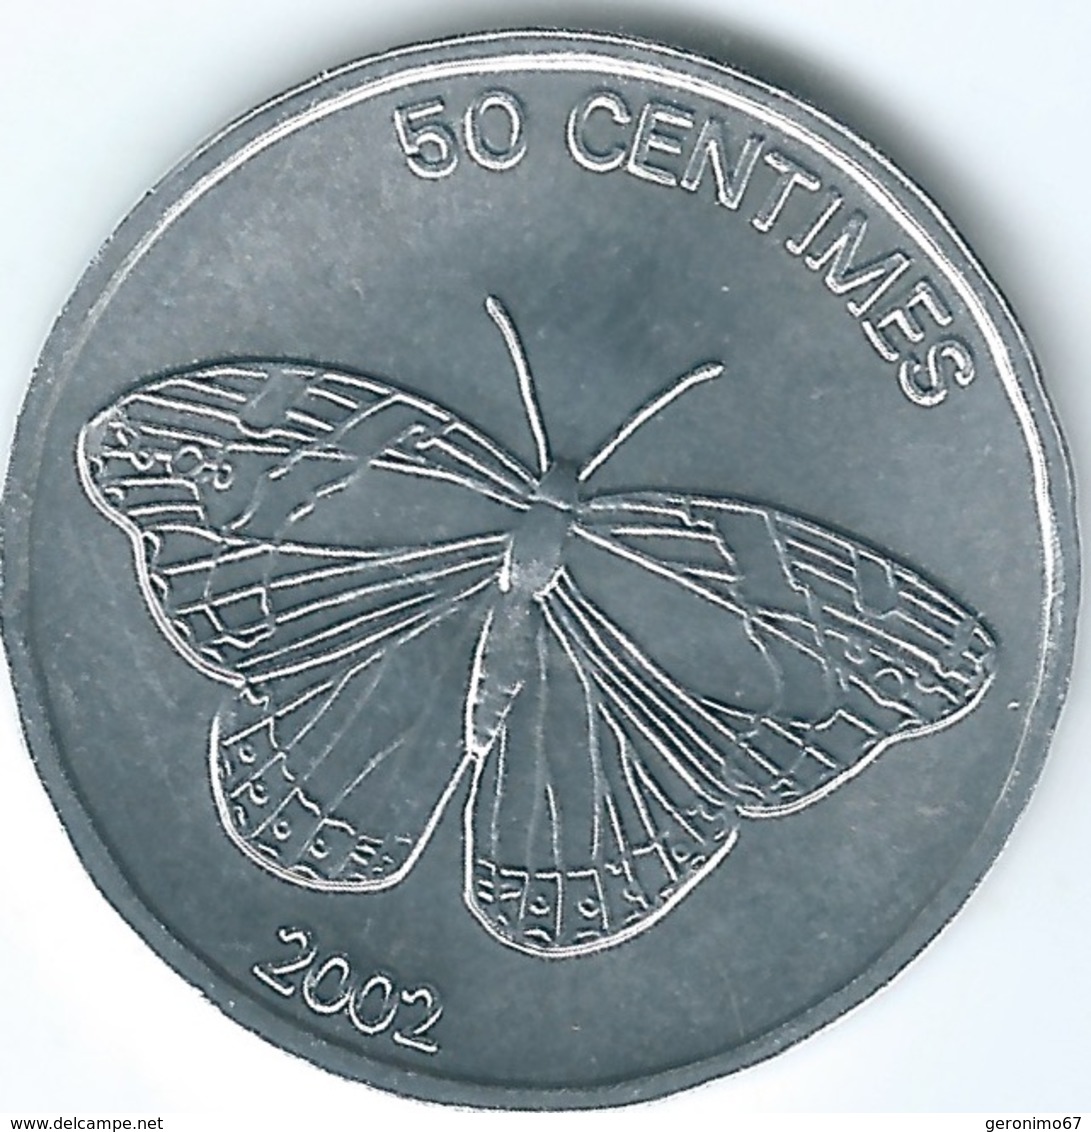 Congo - 50 Centimes - 2002 - Butterfly - KM80 - Congo (Democratische Republiek 1998)